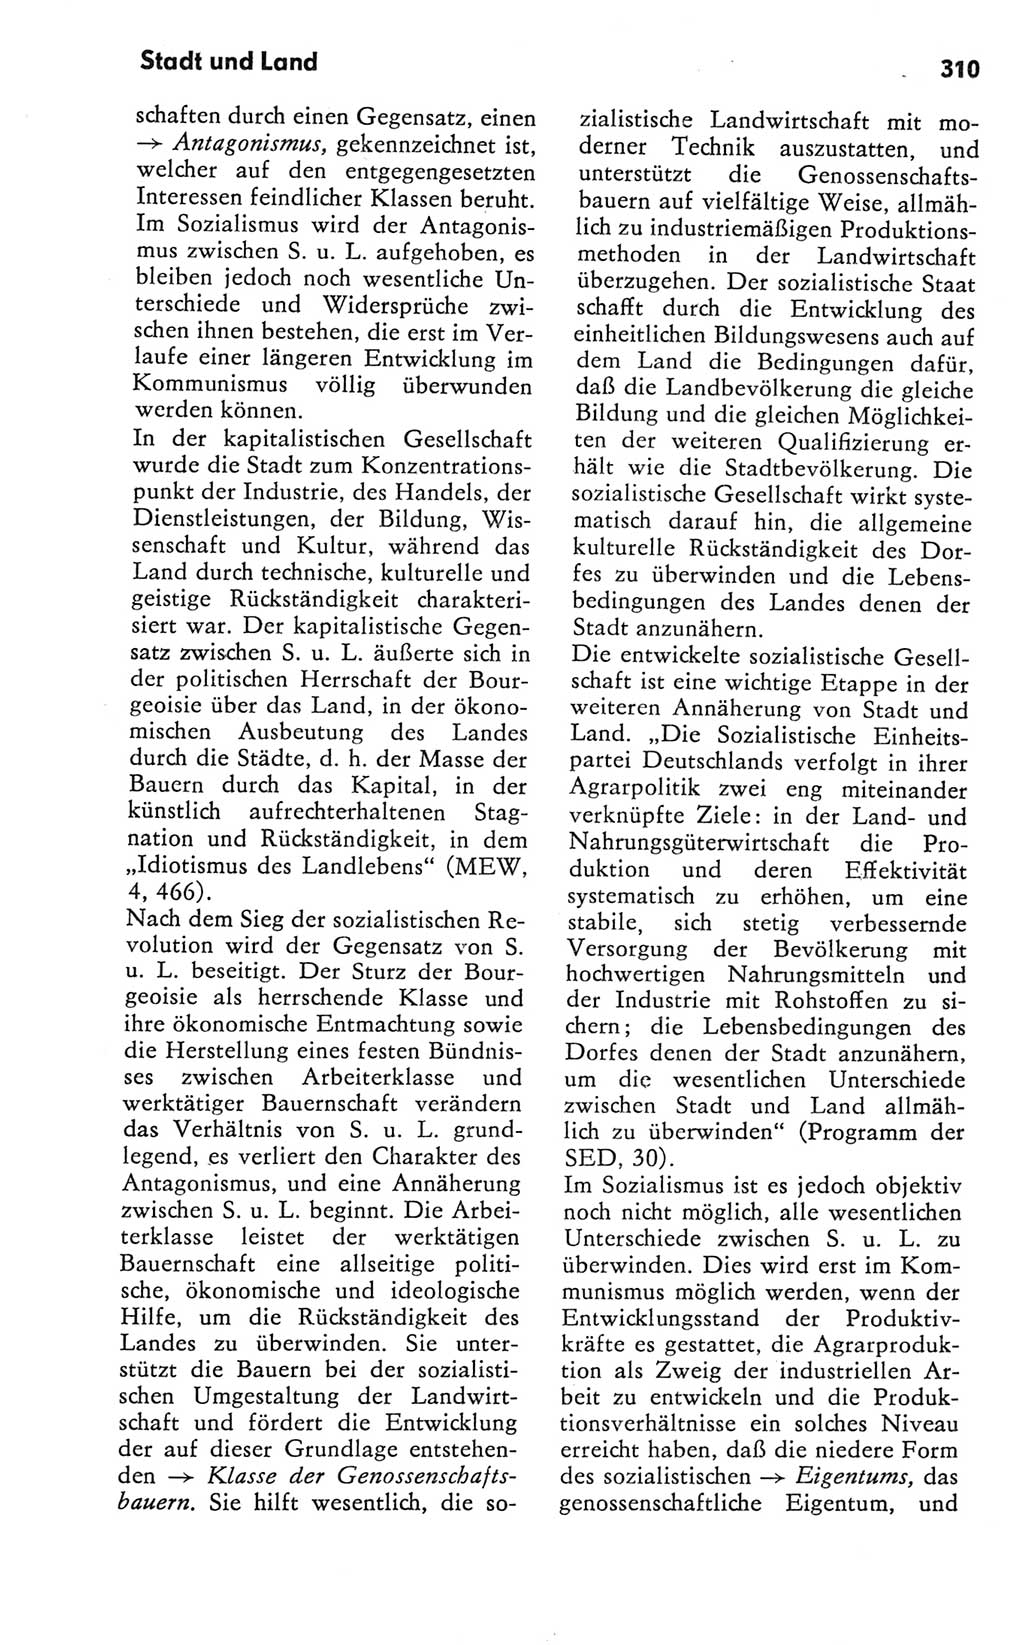 Kleines Wörterbuch der marxistisch-leninistischen Philosophie [Deutsche Demokratische Republik (DDR)] 1981, Seite 310 (Kl. Wb. ML Phil. DDR 1981, S. 310)